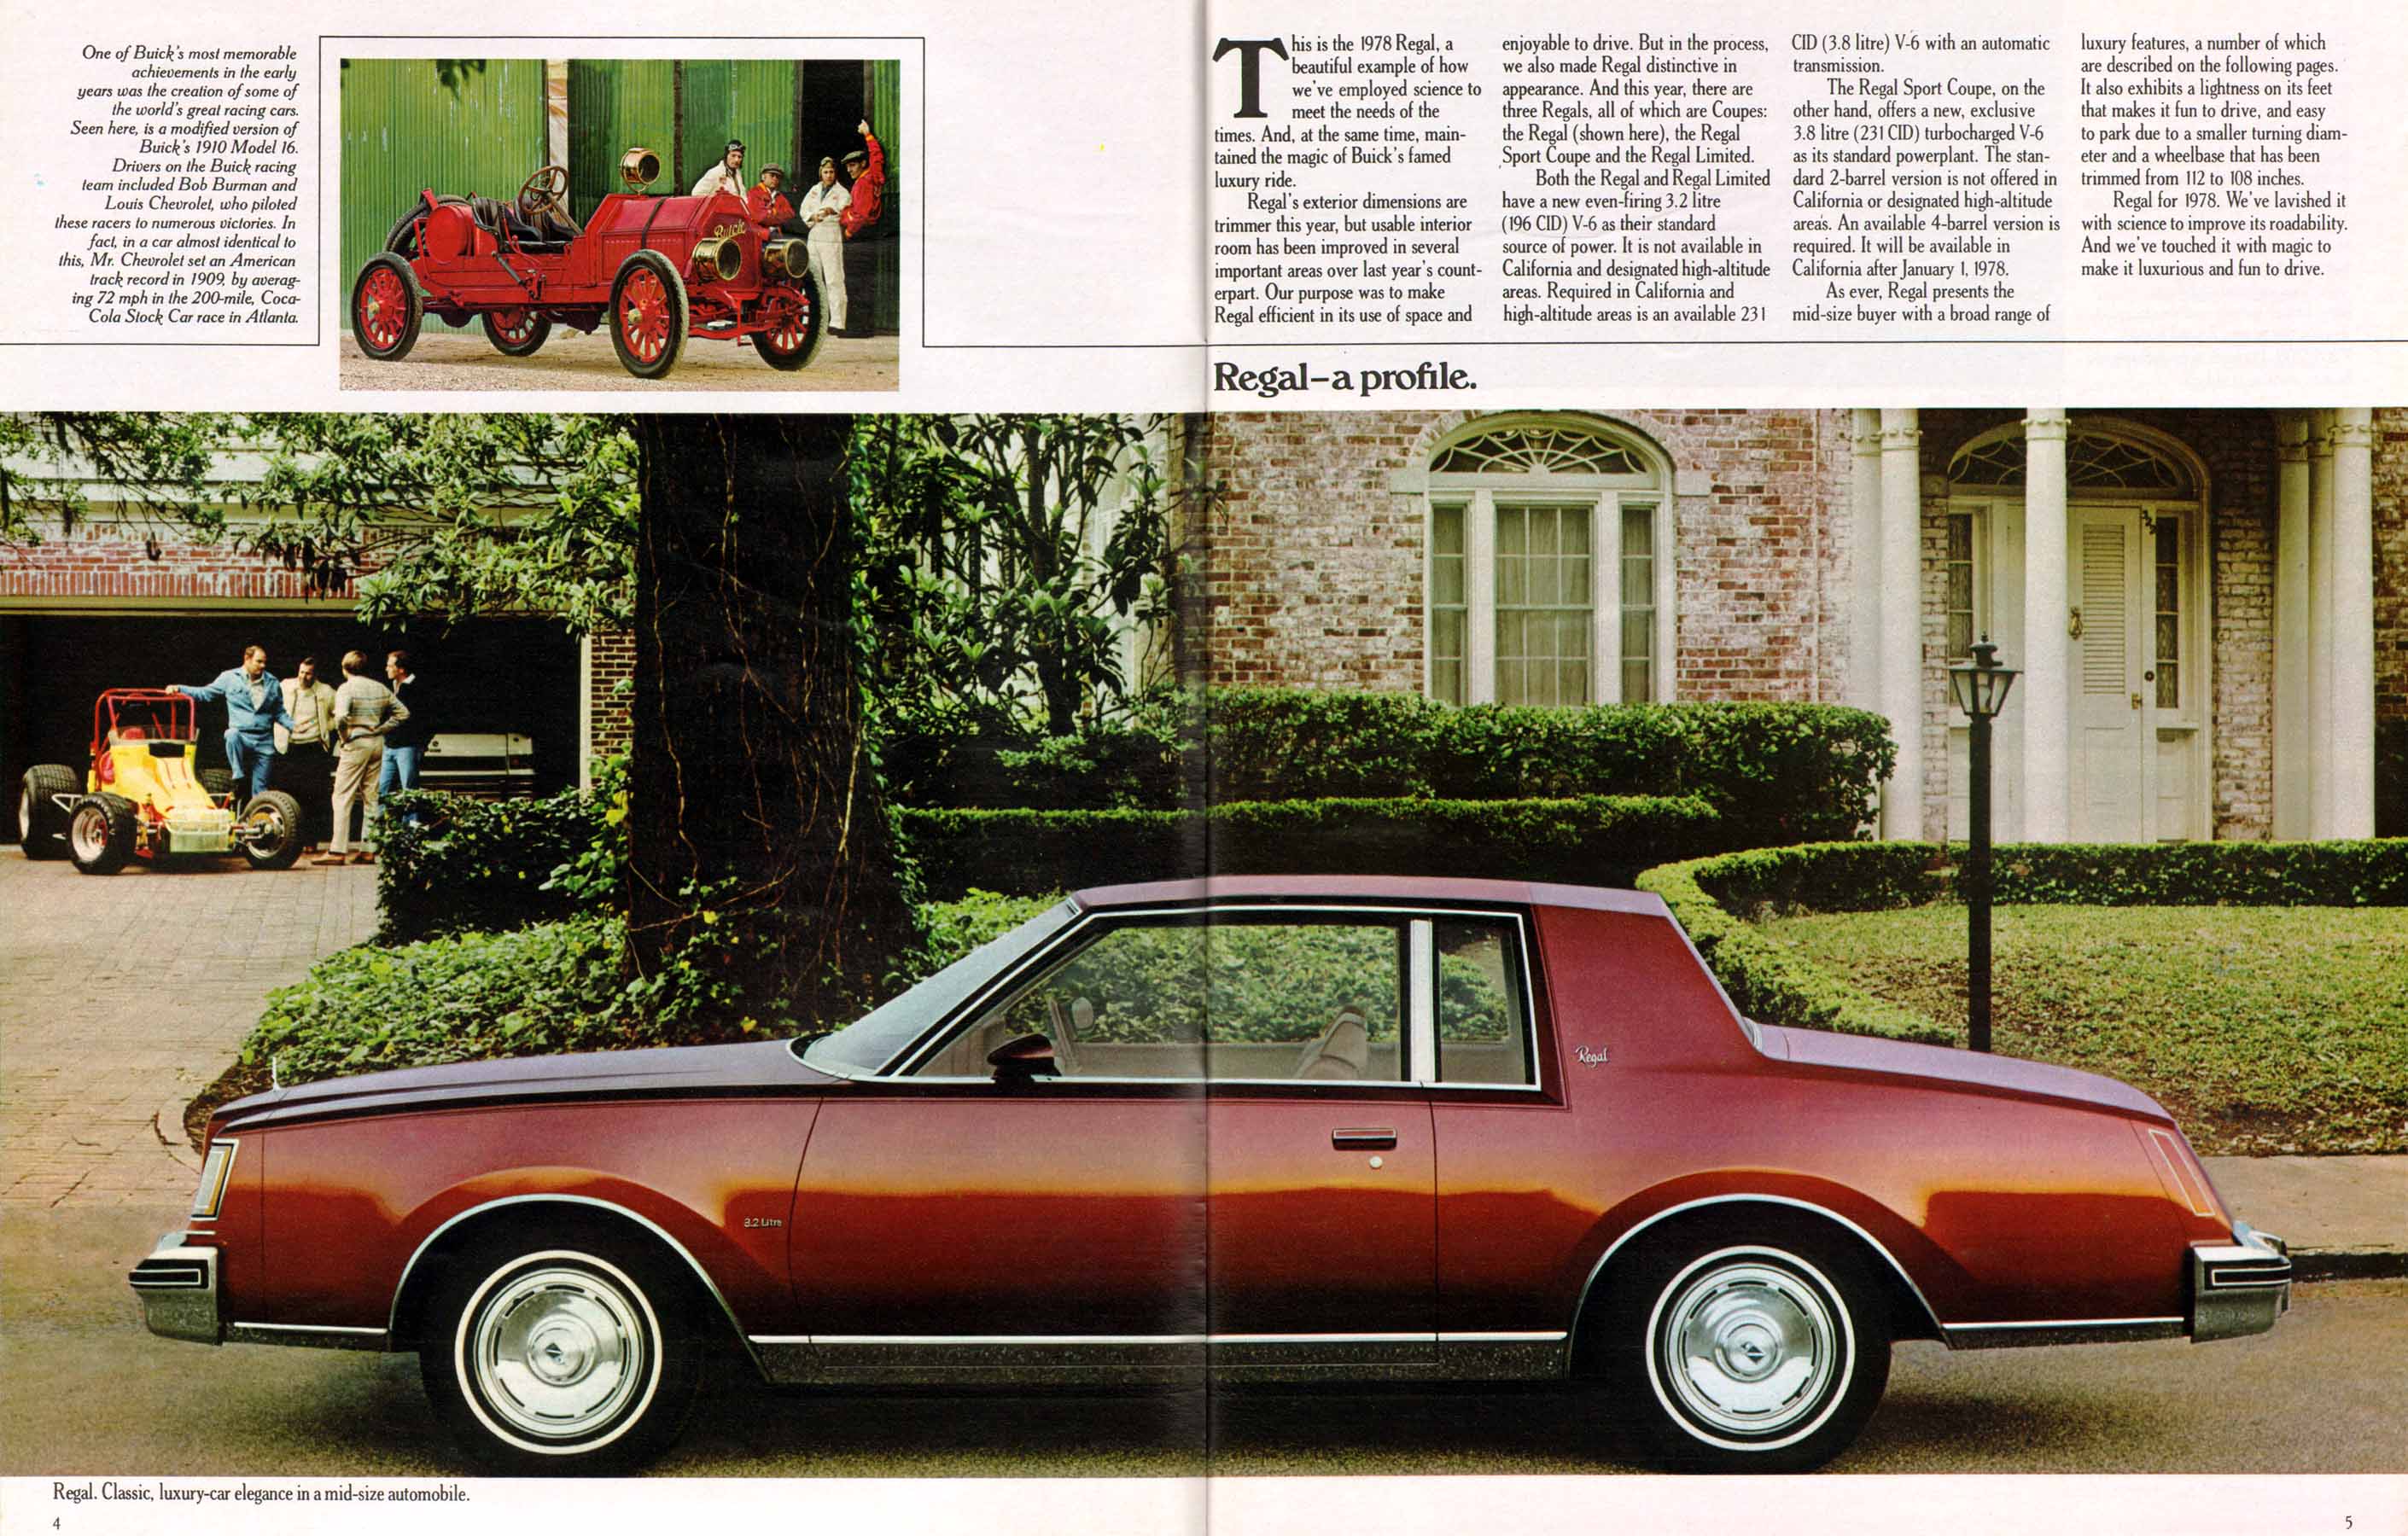 1978 Buick Full Line Prestige-04-05